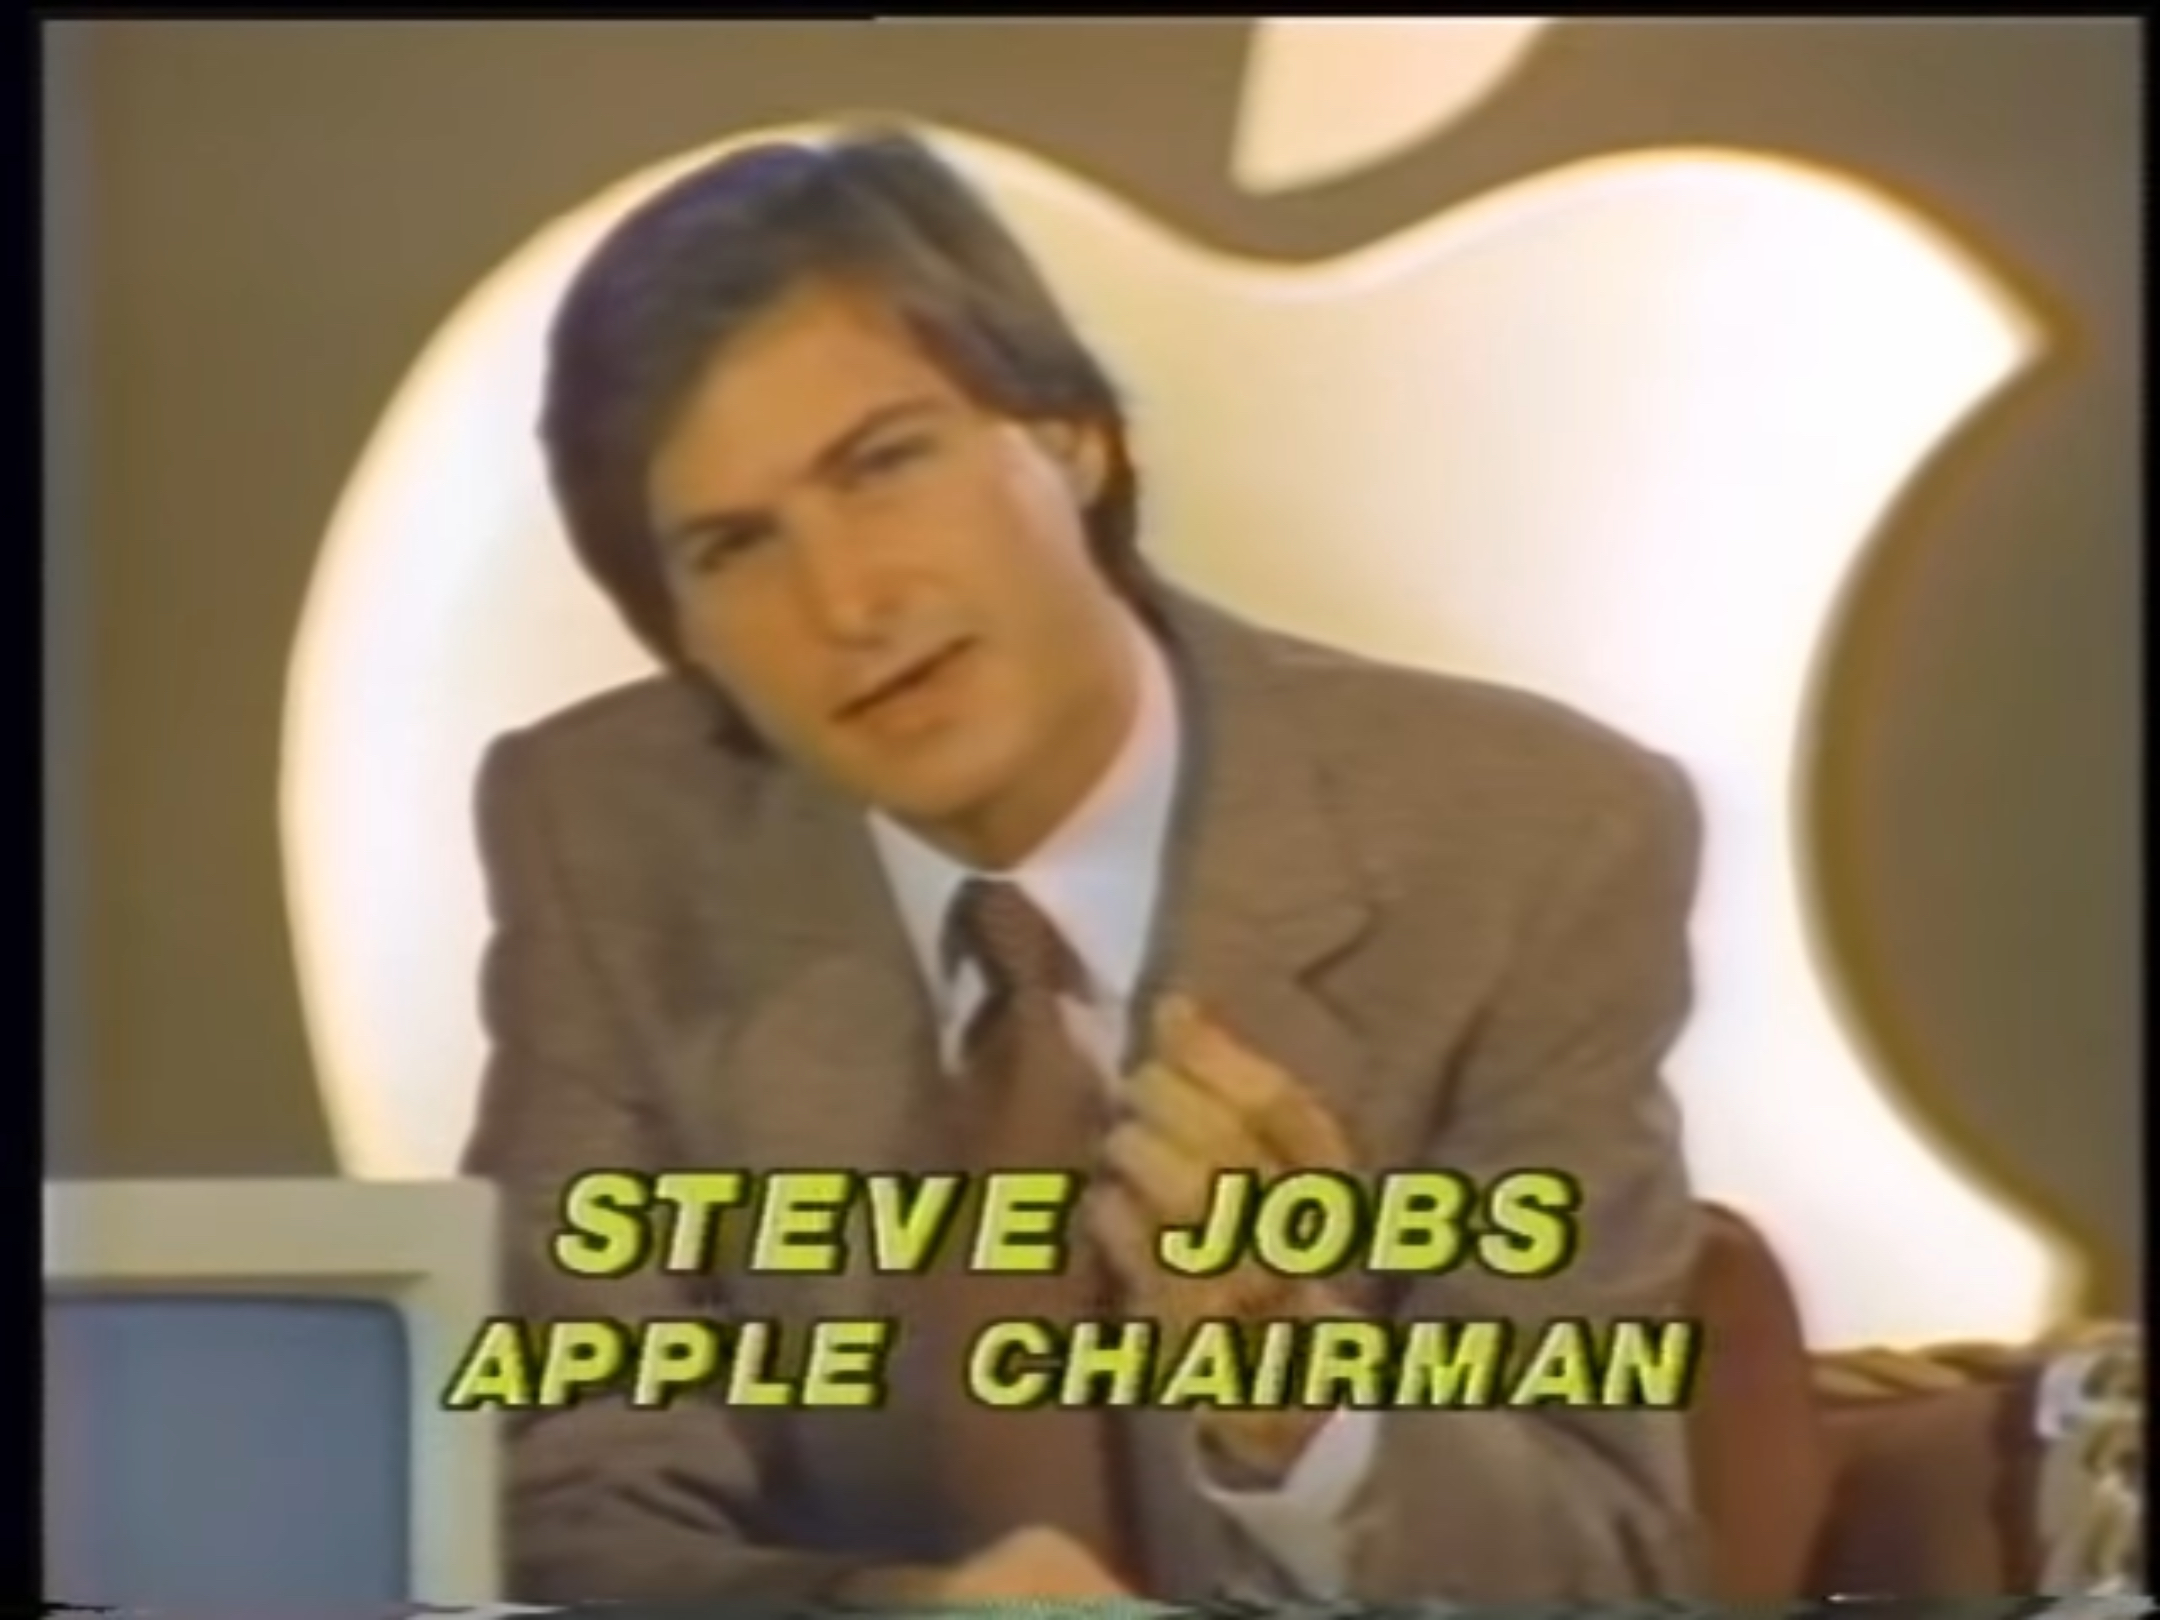 Steve Jobs addresses the media in January 1984.